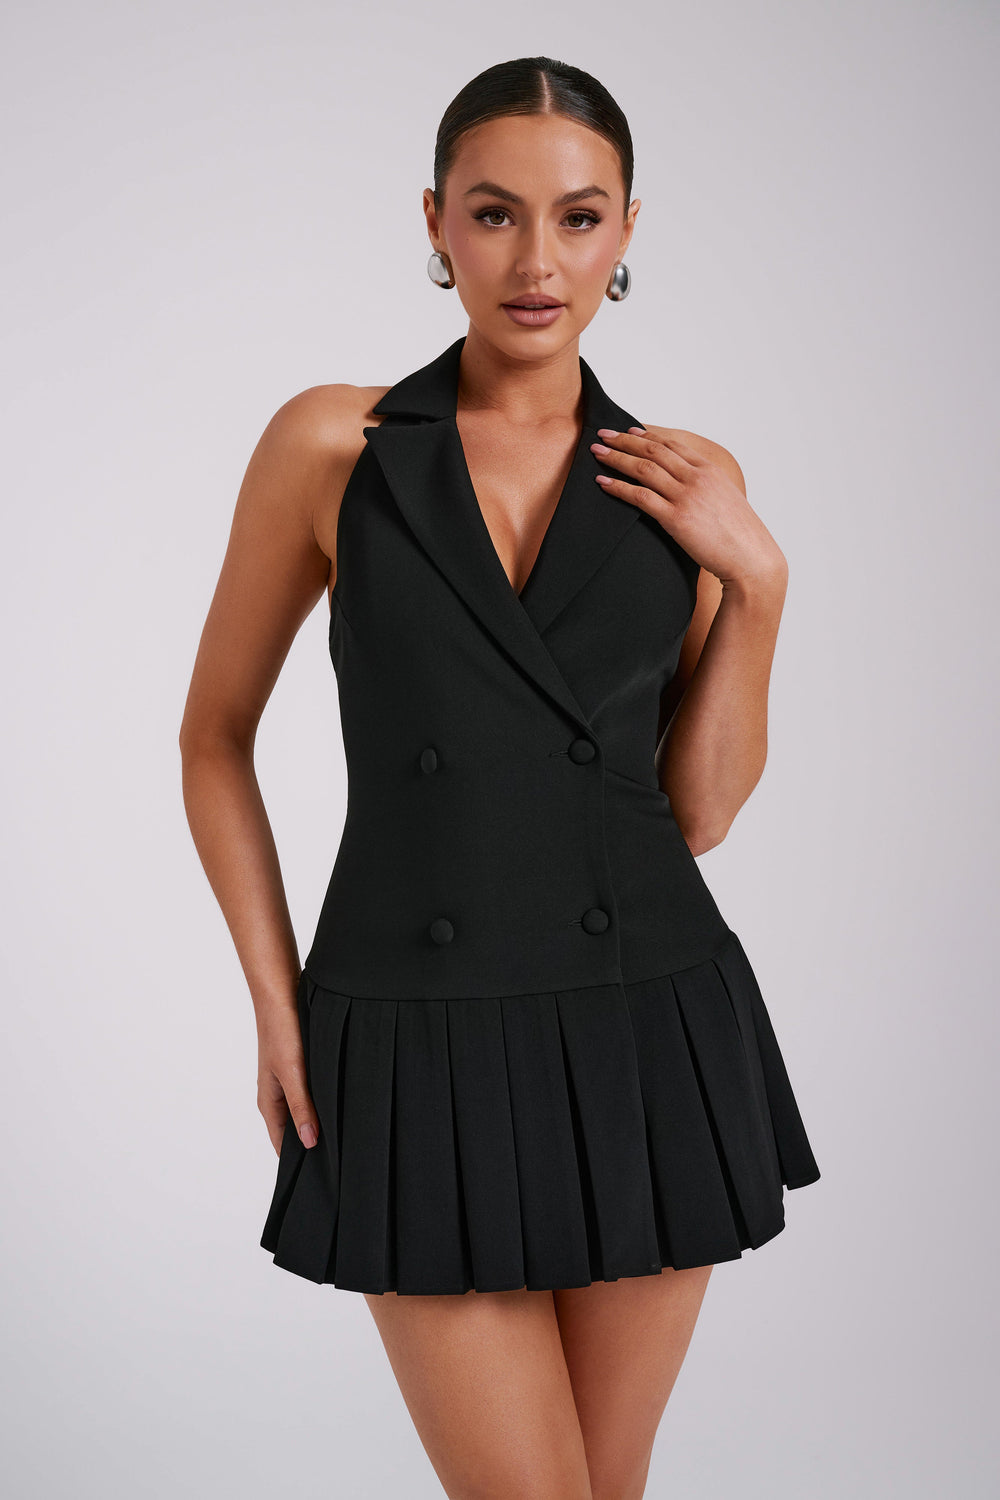 Antoinette Pleated Mini Dress - Black